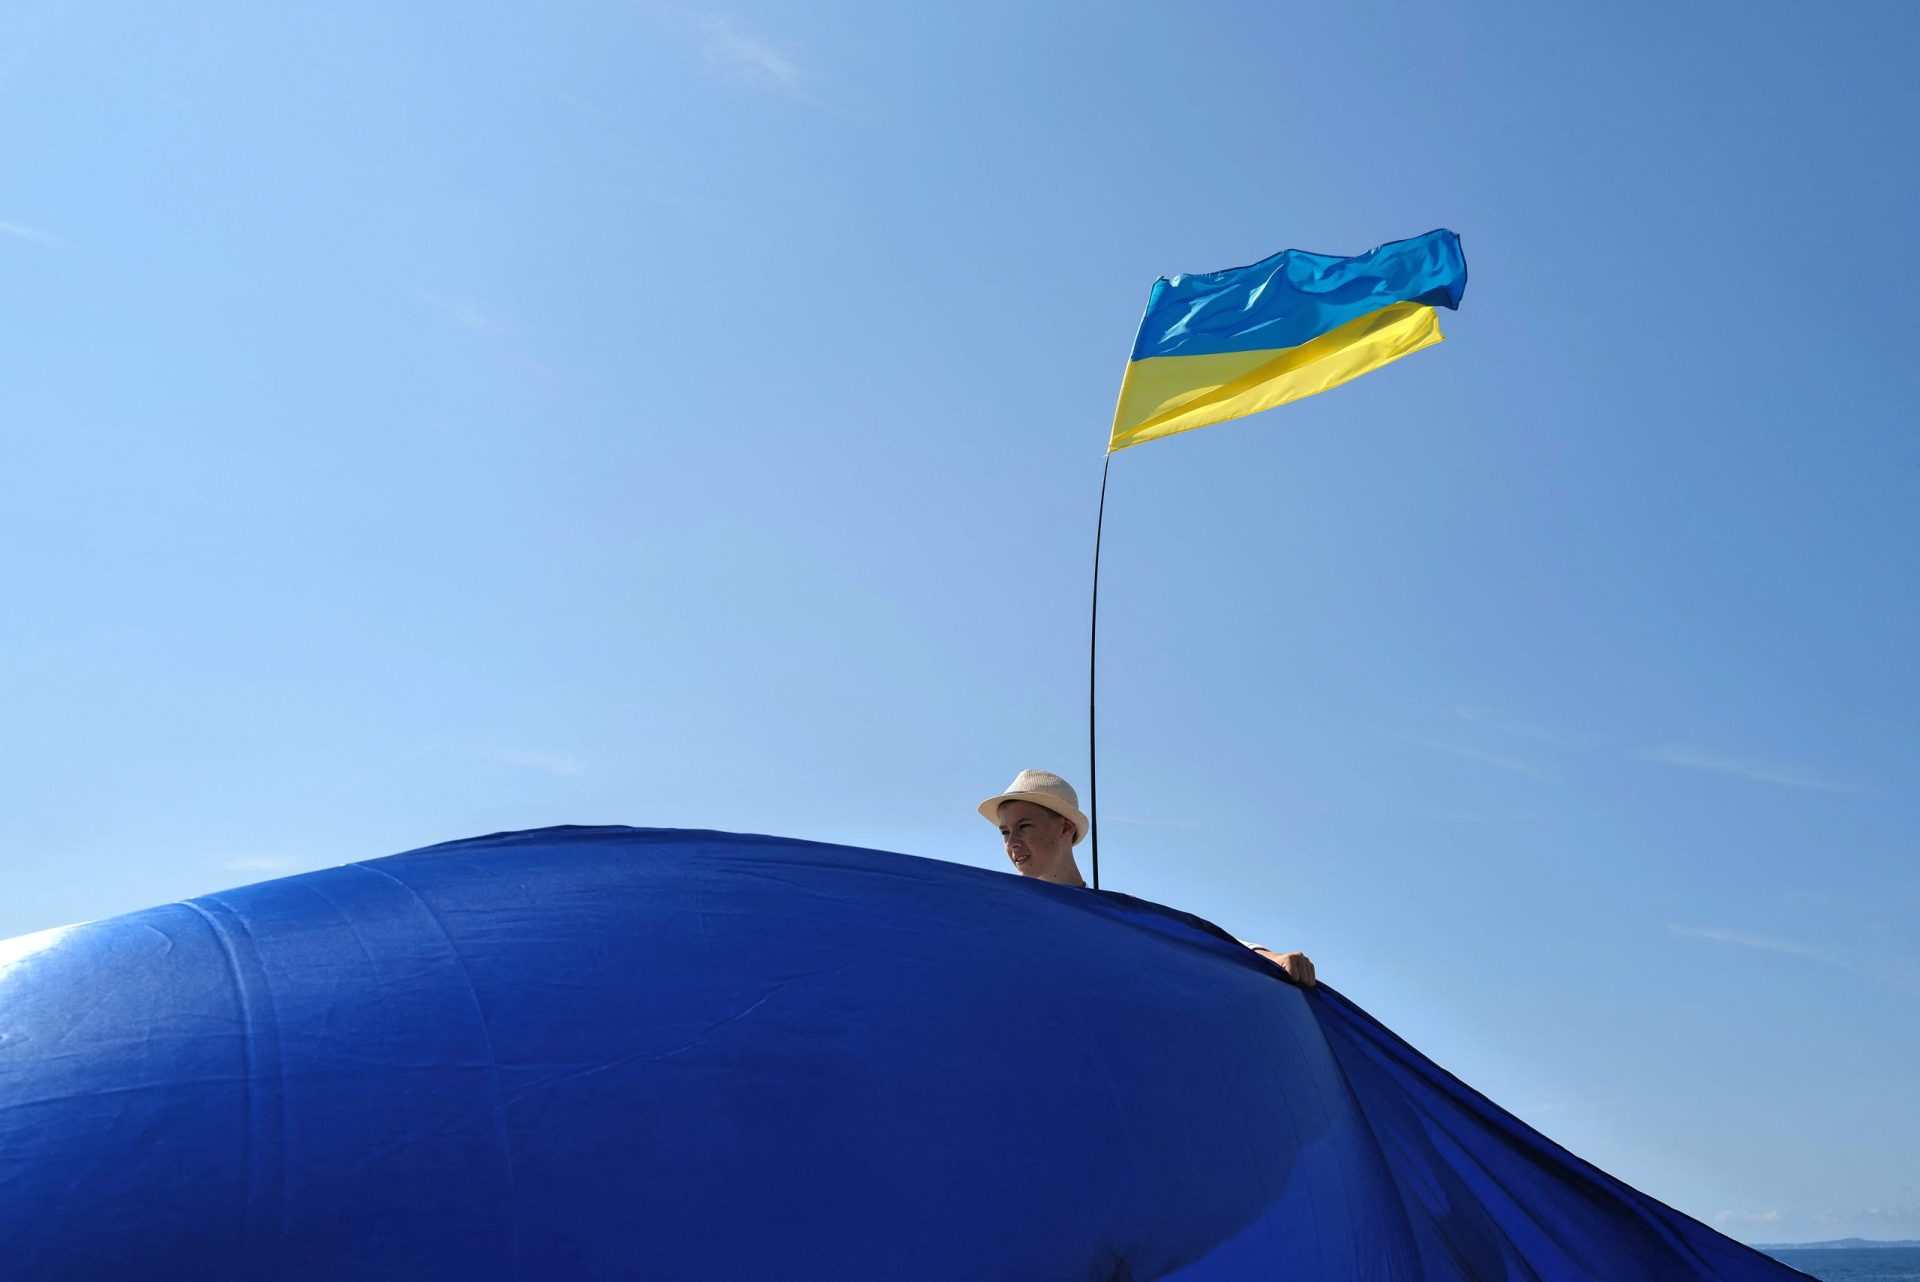 “Durante o tempo que for preciso”. Líderes mundiais deixam palavras de apoio à Ucrânia no dia da sua independência